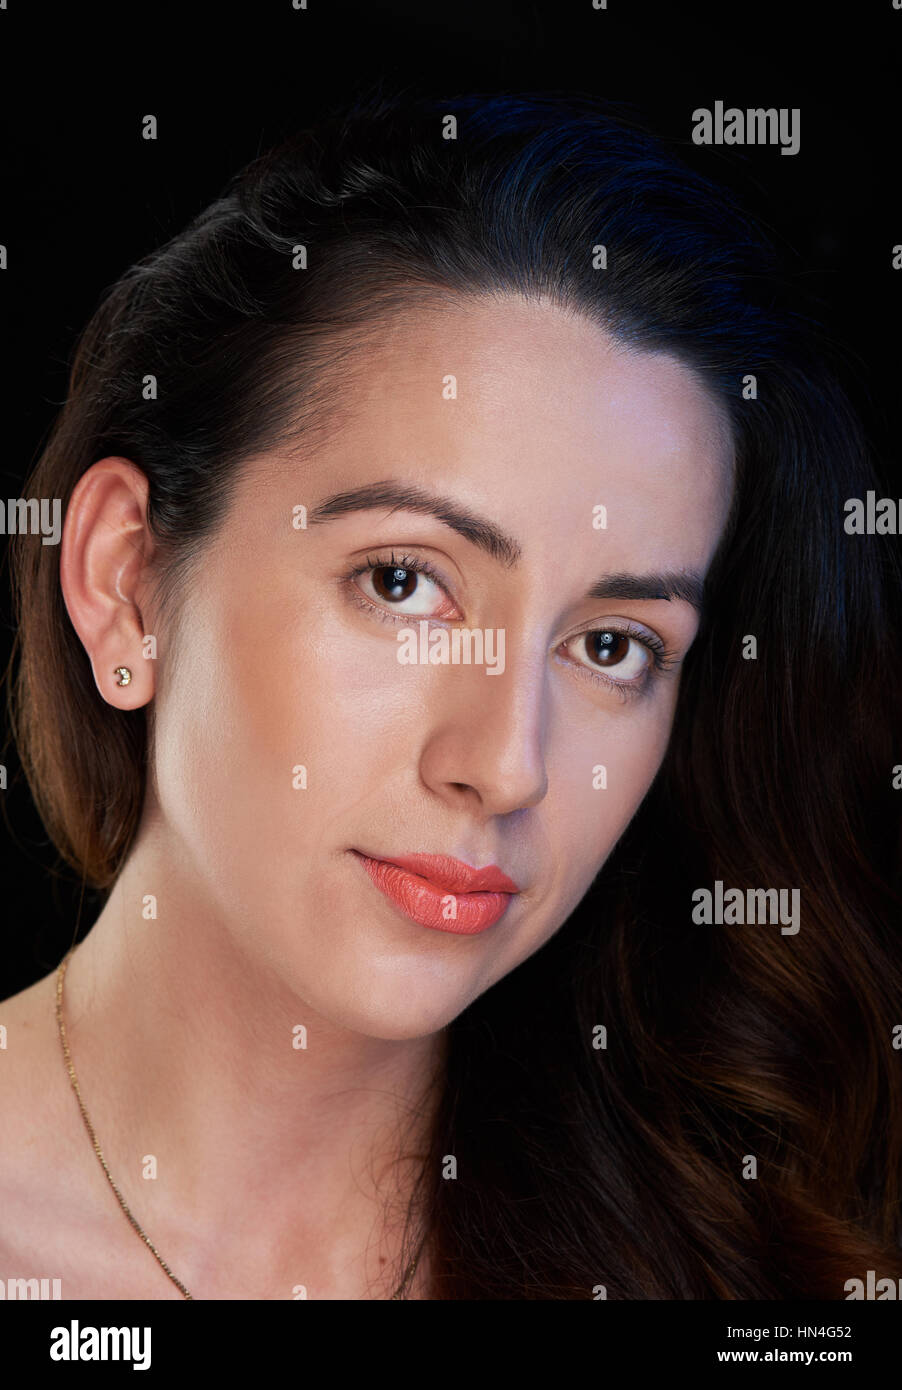 headshot of skinny girl isolated on black background Stock Photo